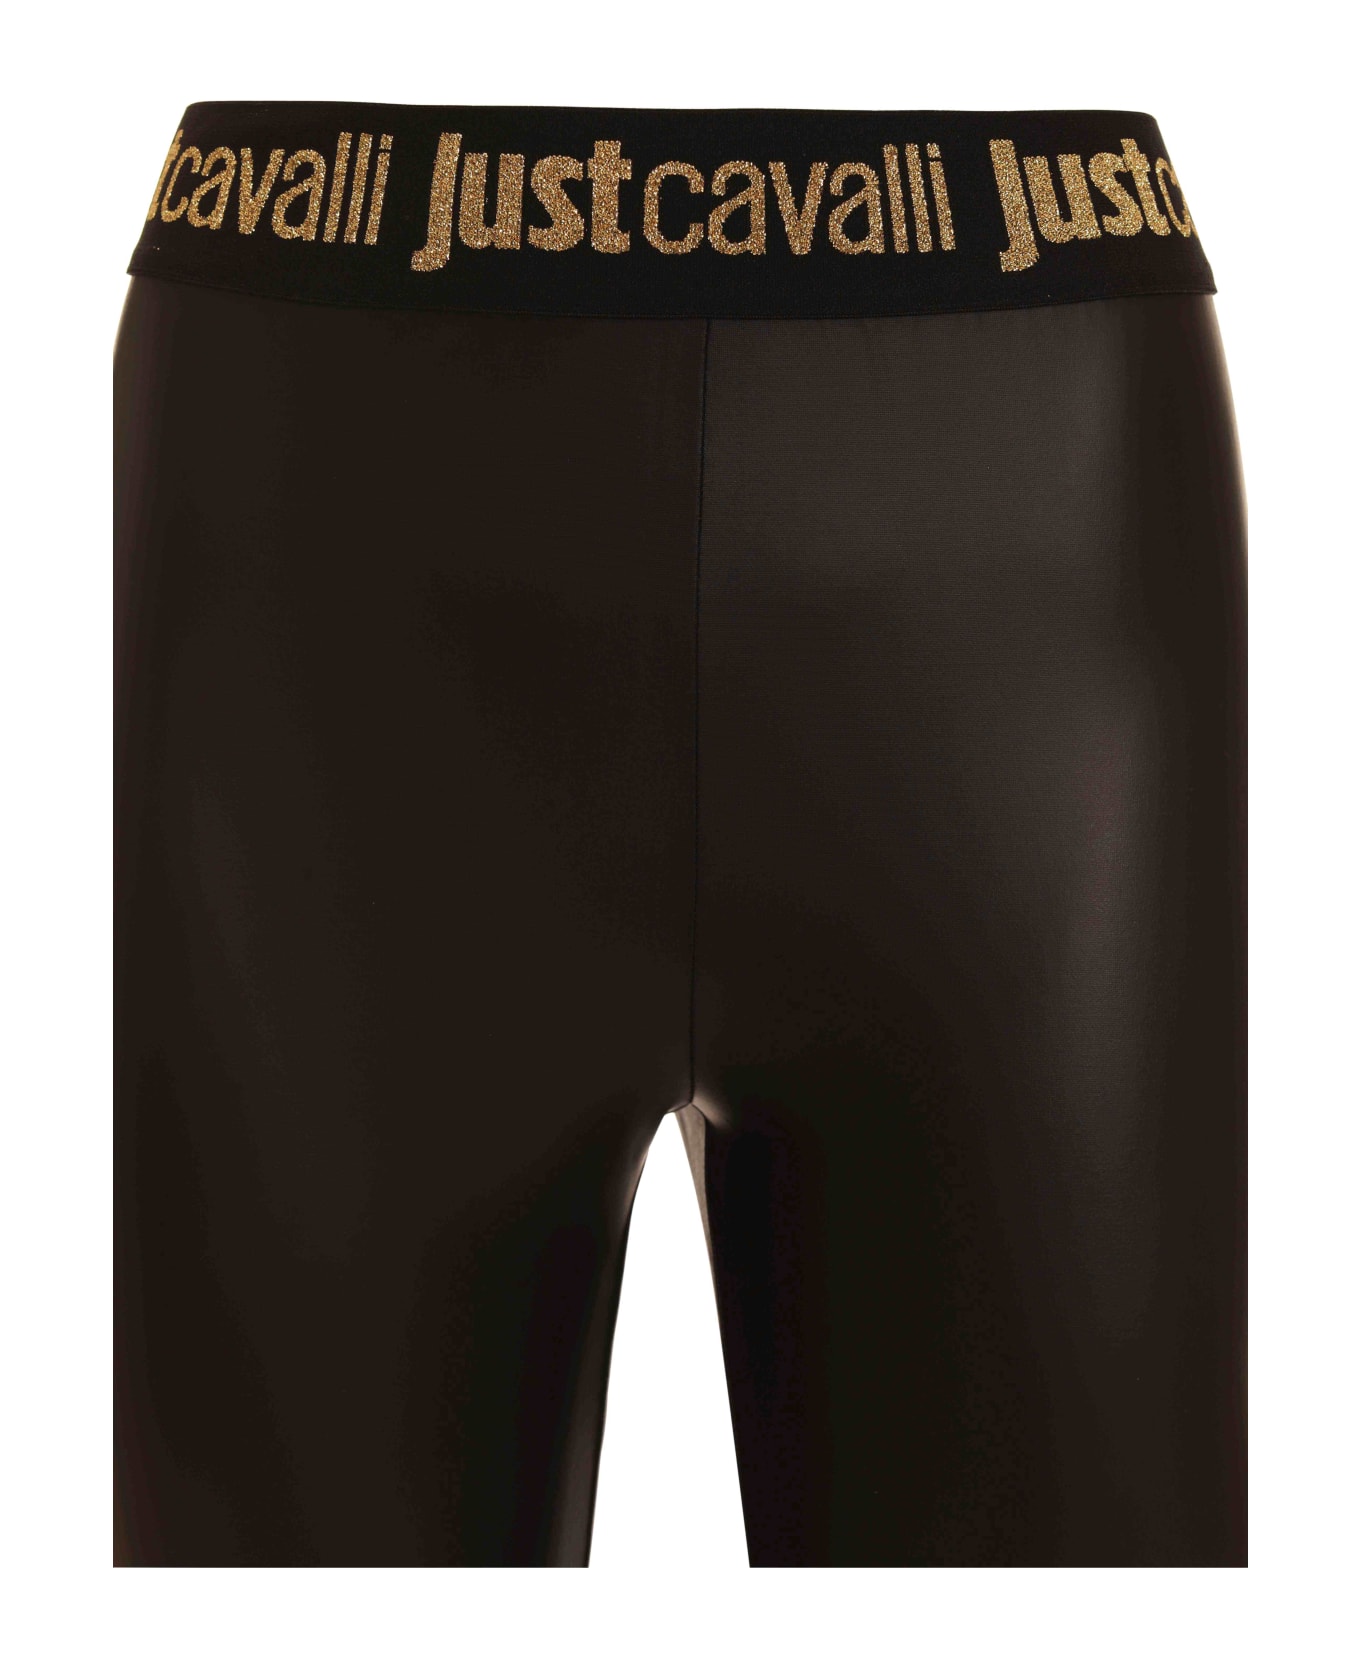 Just Cavalli Leggings - Black